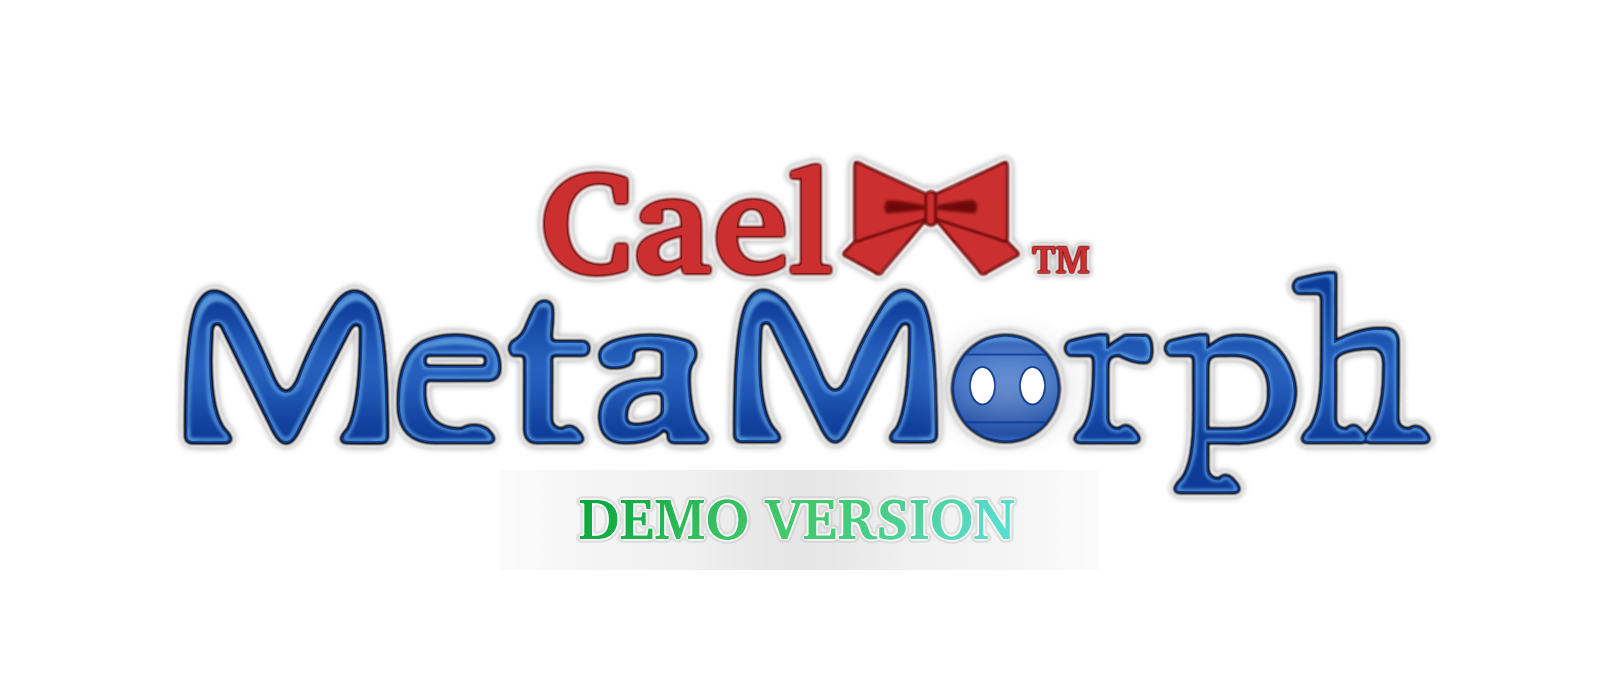 Cael Meta Morph Demo Version